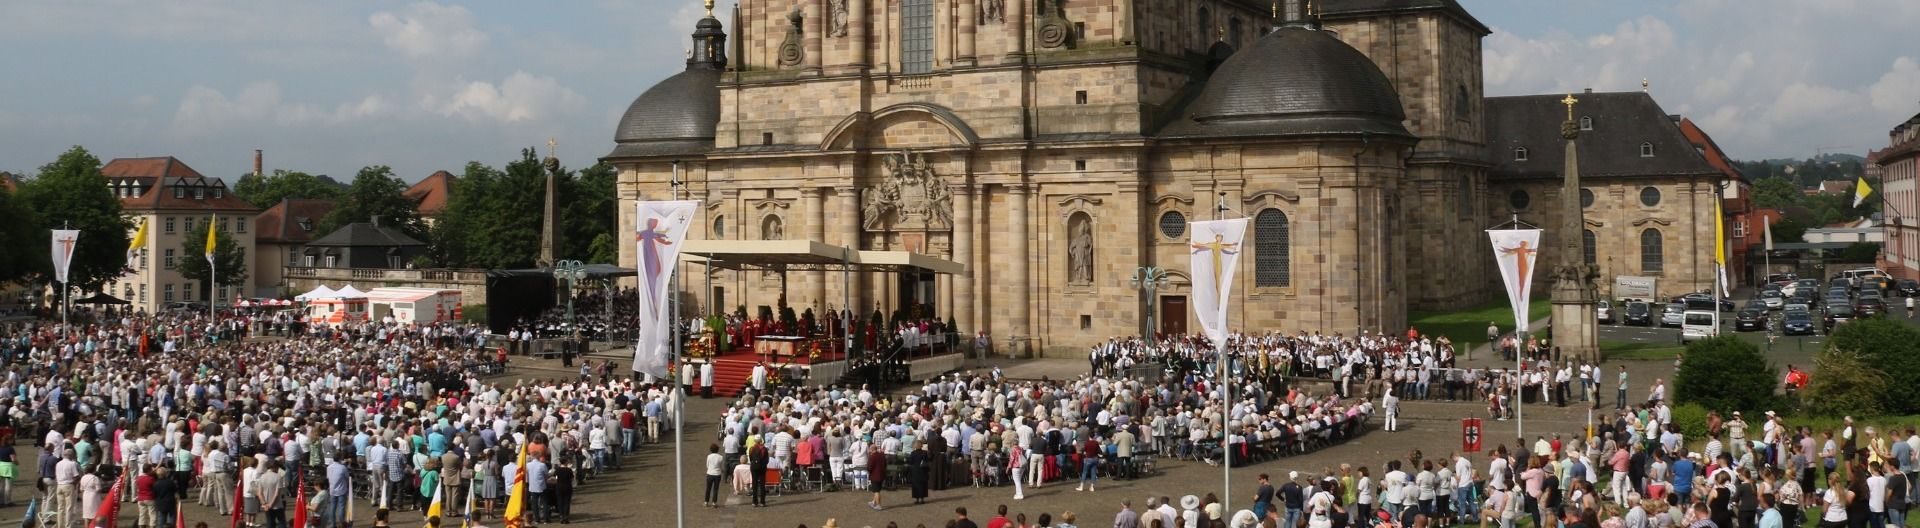 Bischof von Limburg predigte beim Bonifatiusfest – Feierliche Eröffnung der traditionellen Bonifatiuswallfahrten